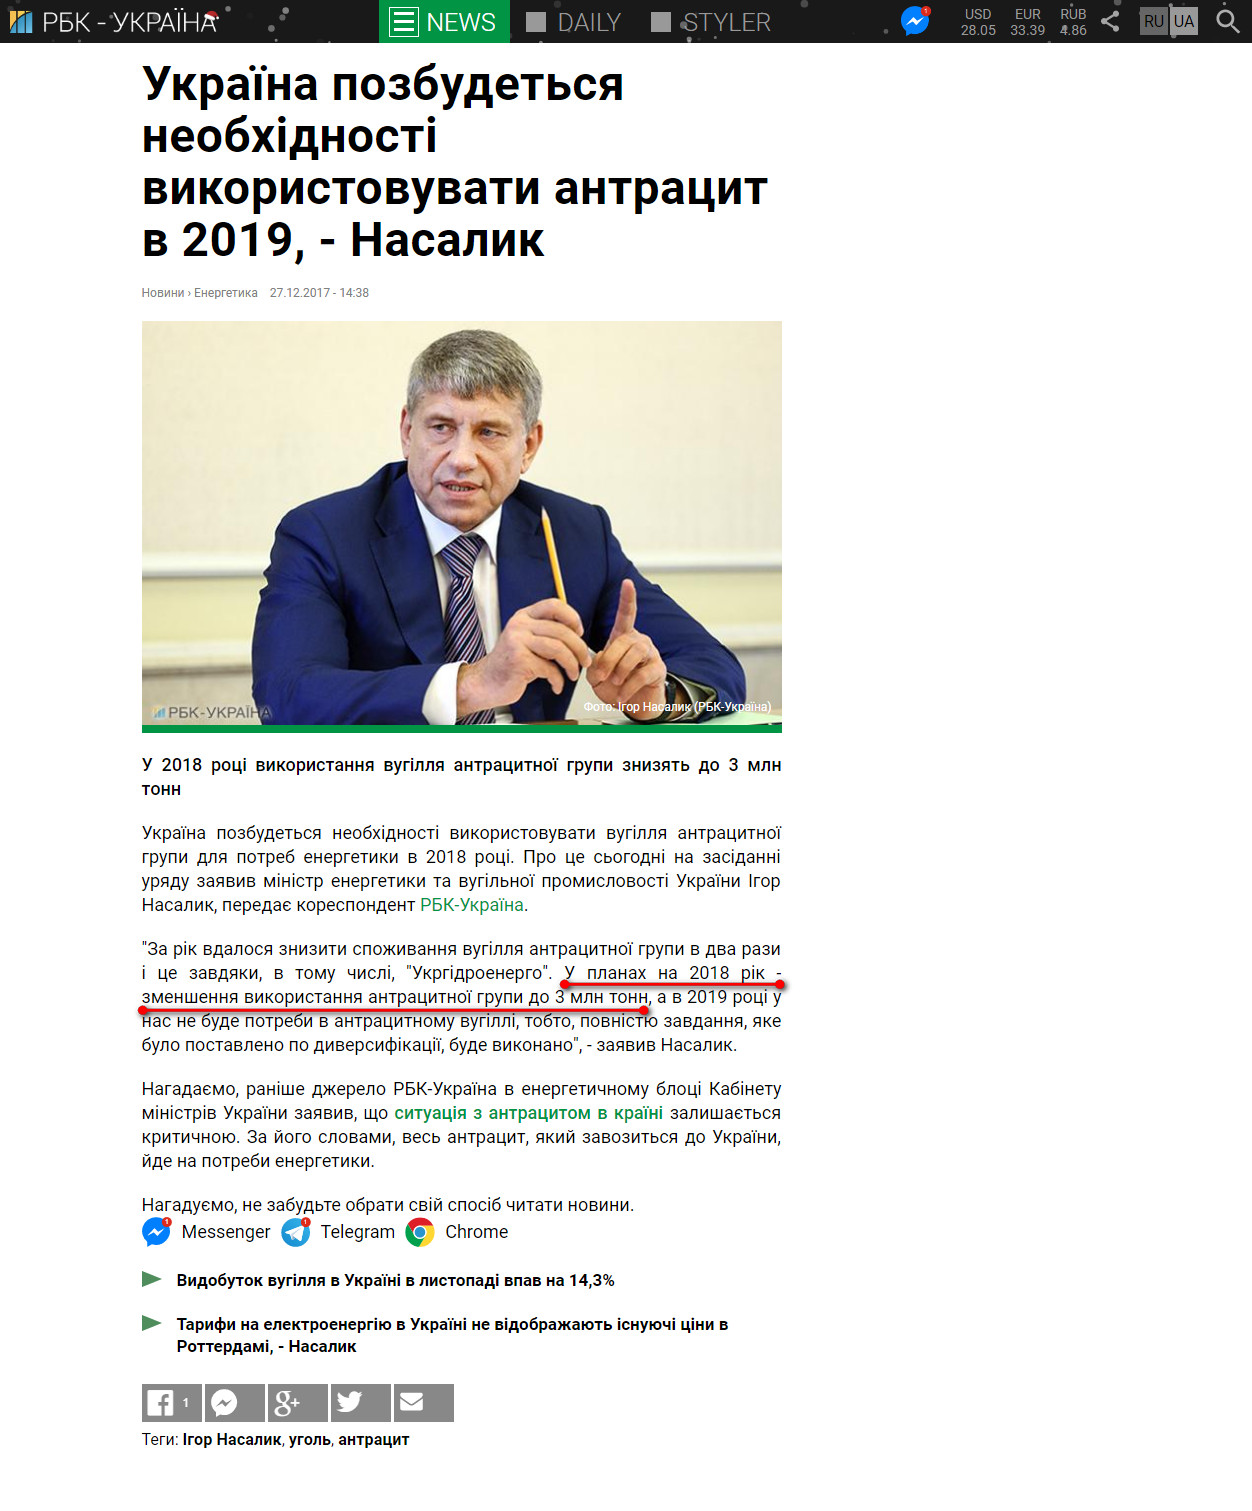 https://www.rbc.ua/ukr/news/ukraina-izbavitsya-neobhodimosti-ispolzovat-1514378080.html